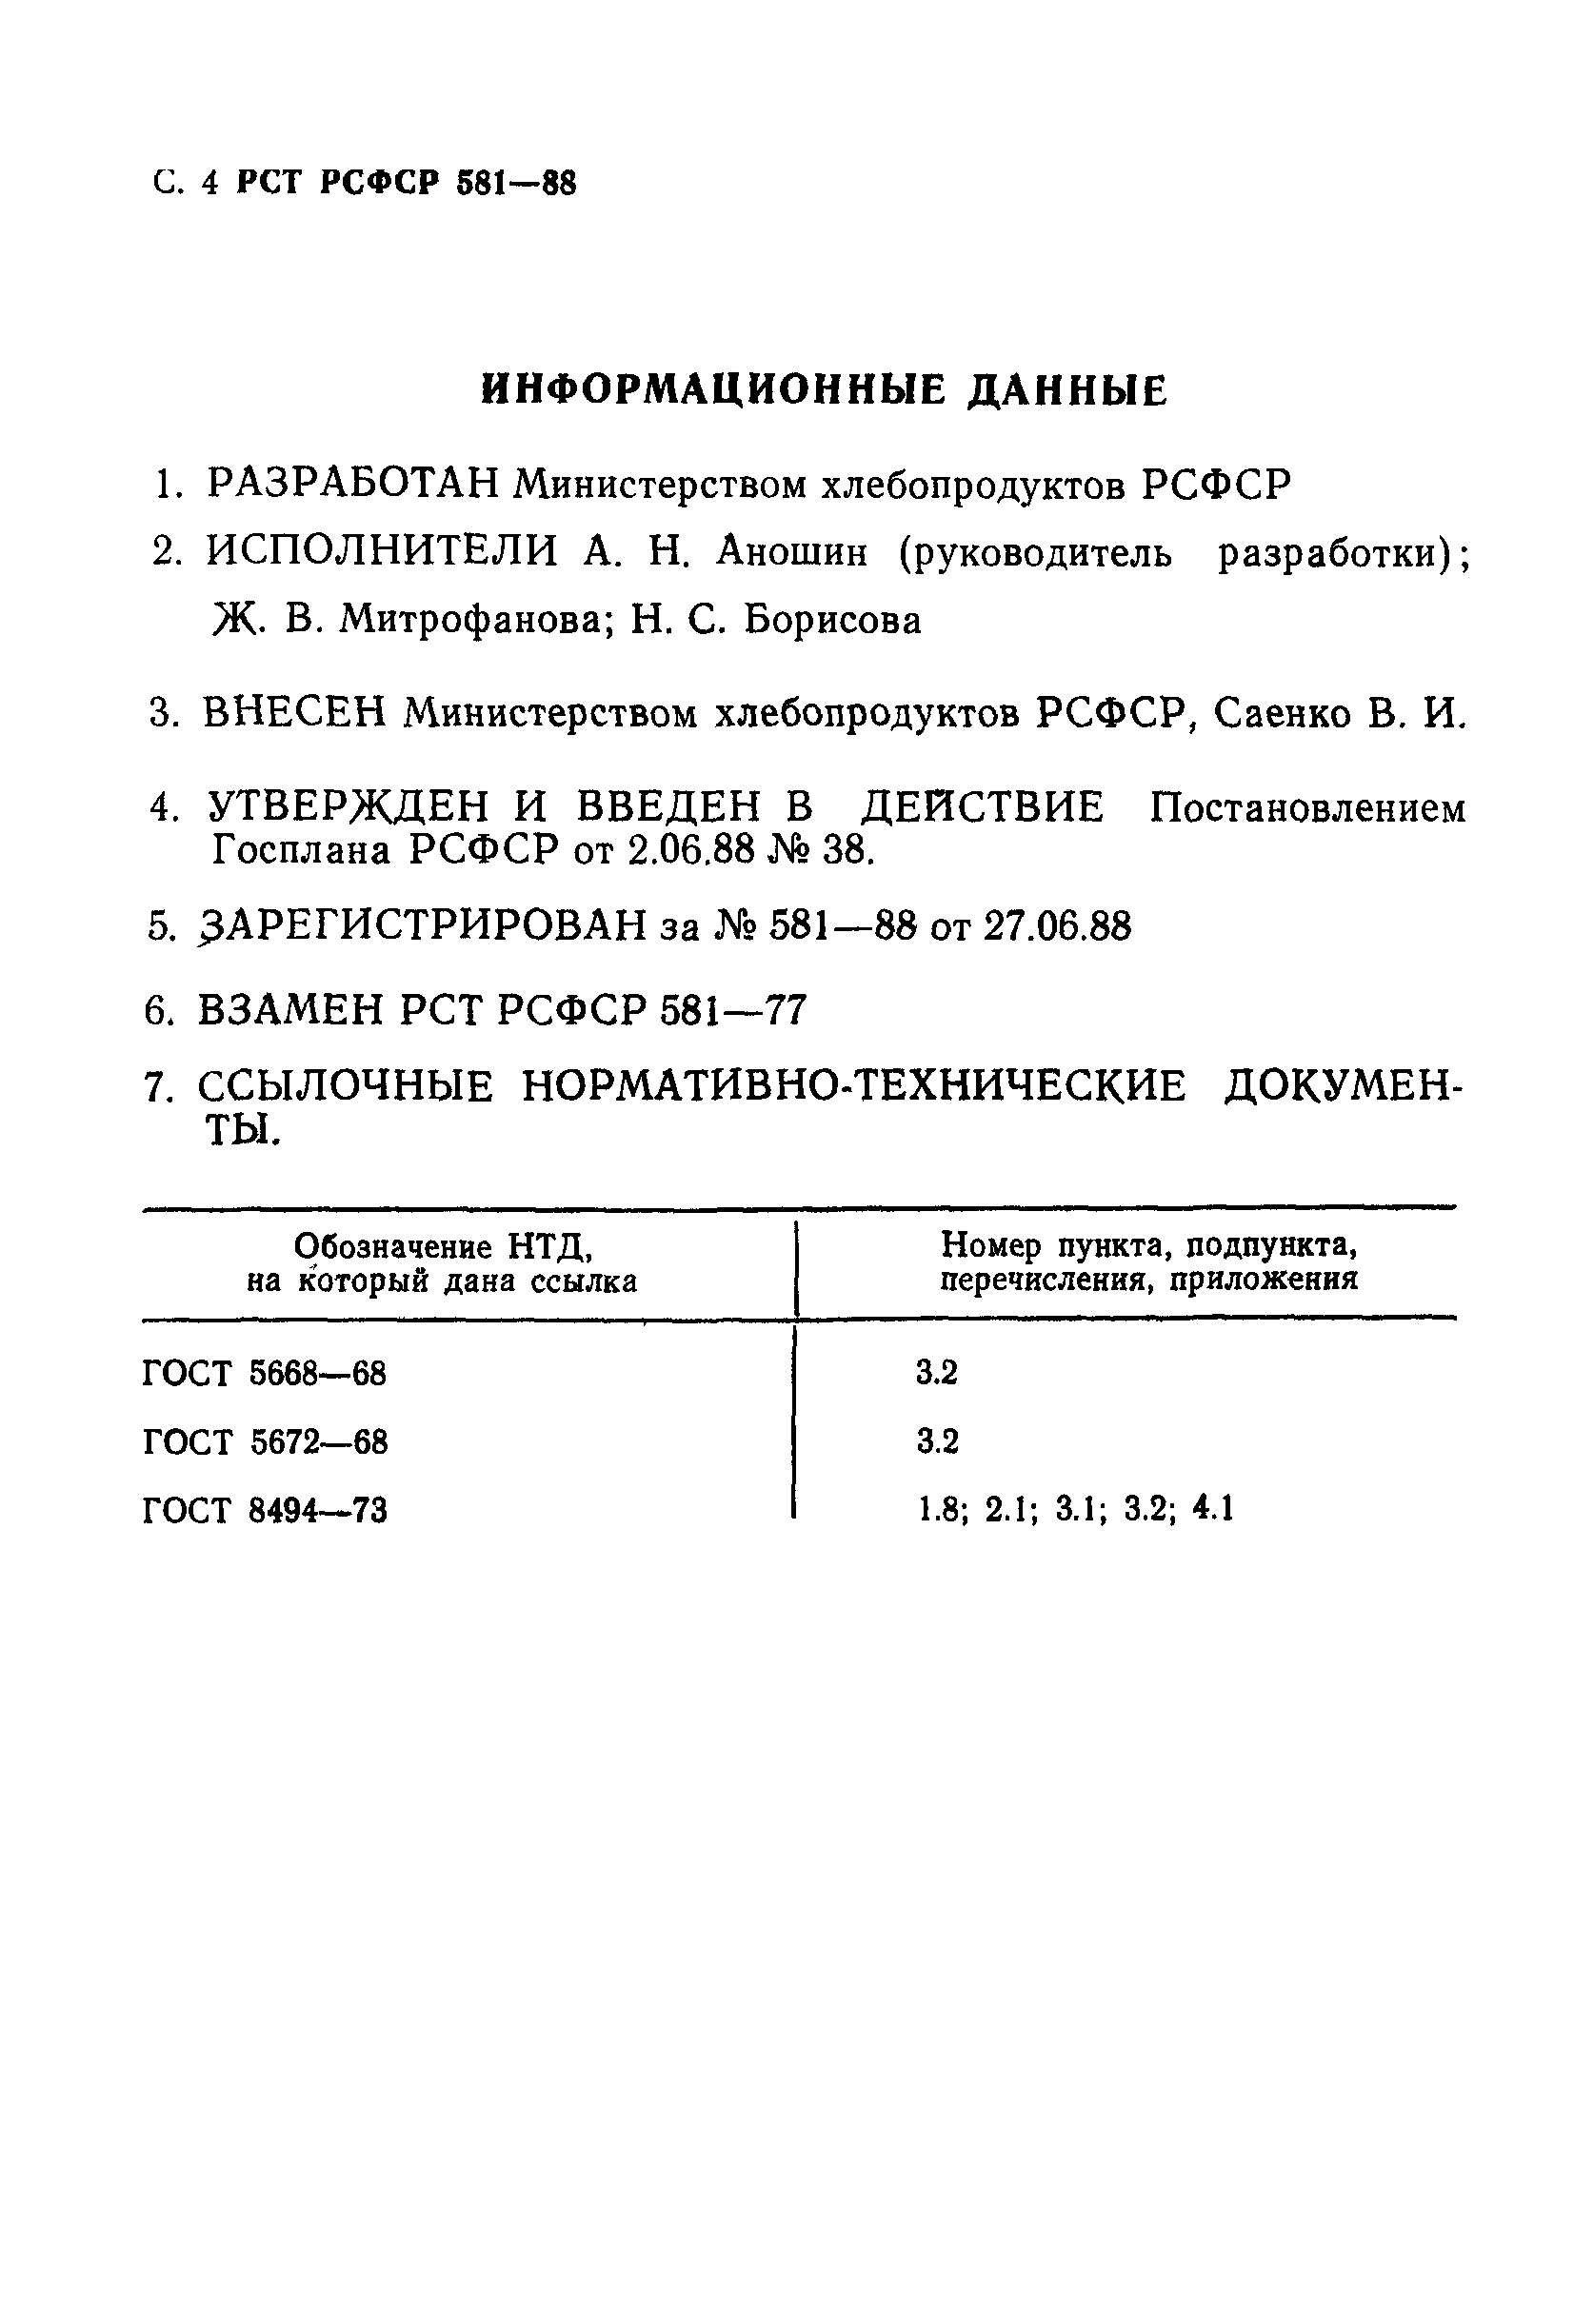 РСТ РСФСР 581-88